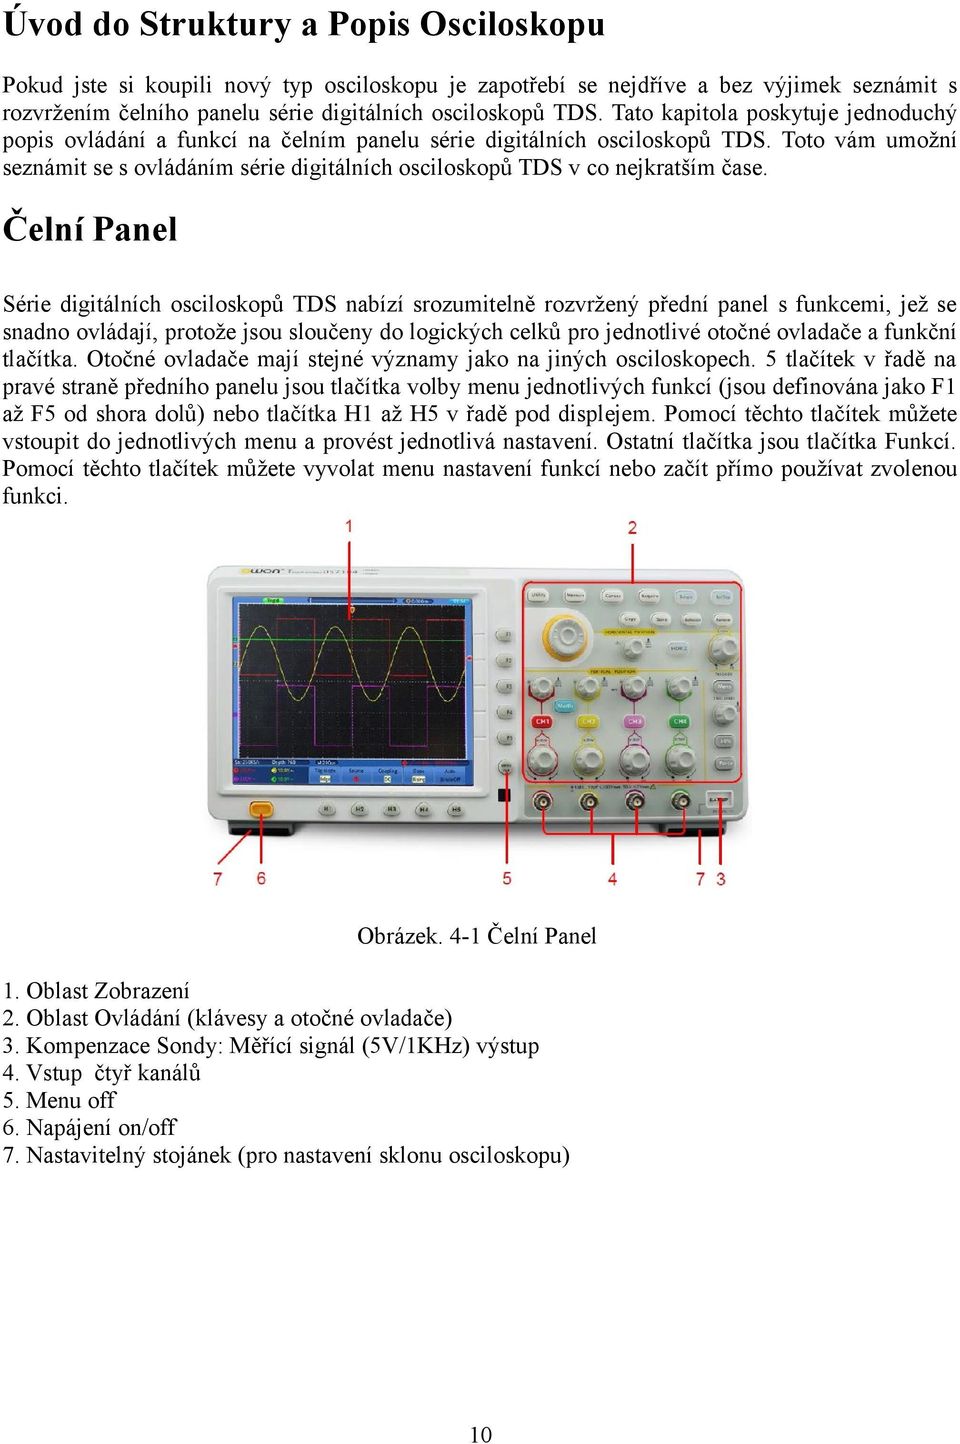 Toto vám umožní seznámit se s ovládáním série digitálních osciloskopů TDS v co nejkratším čase.